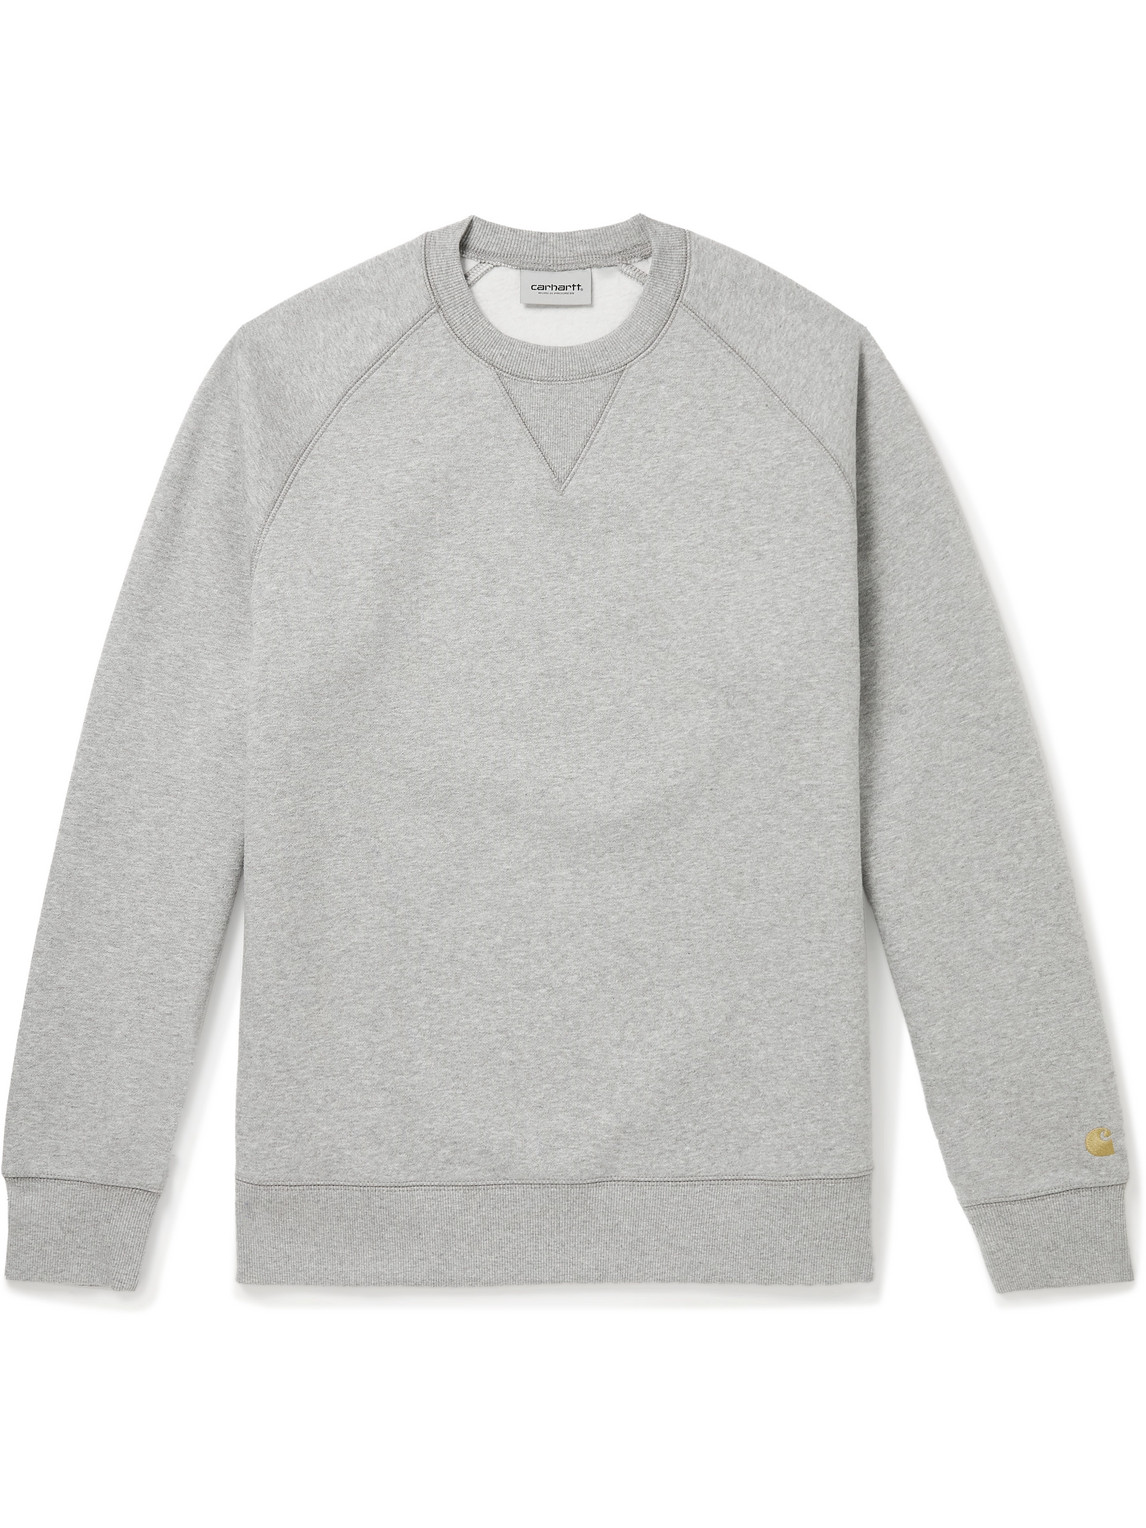 Carhartt WIP - Chase Logo-Embroidered Cotton-Blend Jersey Sweatshirt - Men - Gray - XXL von Carhartt WIP